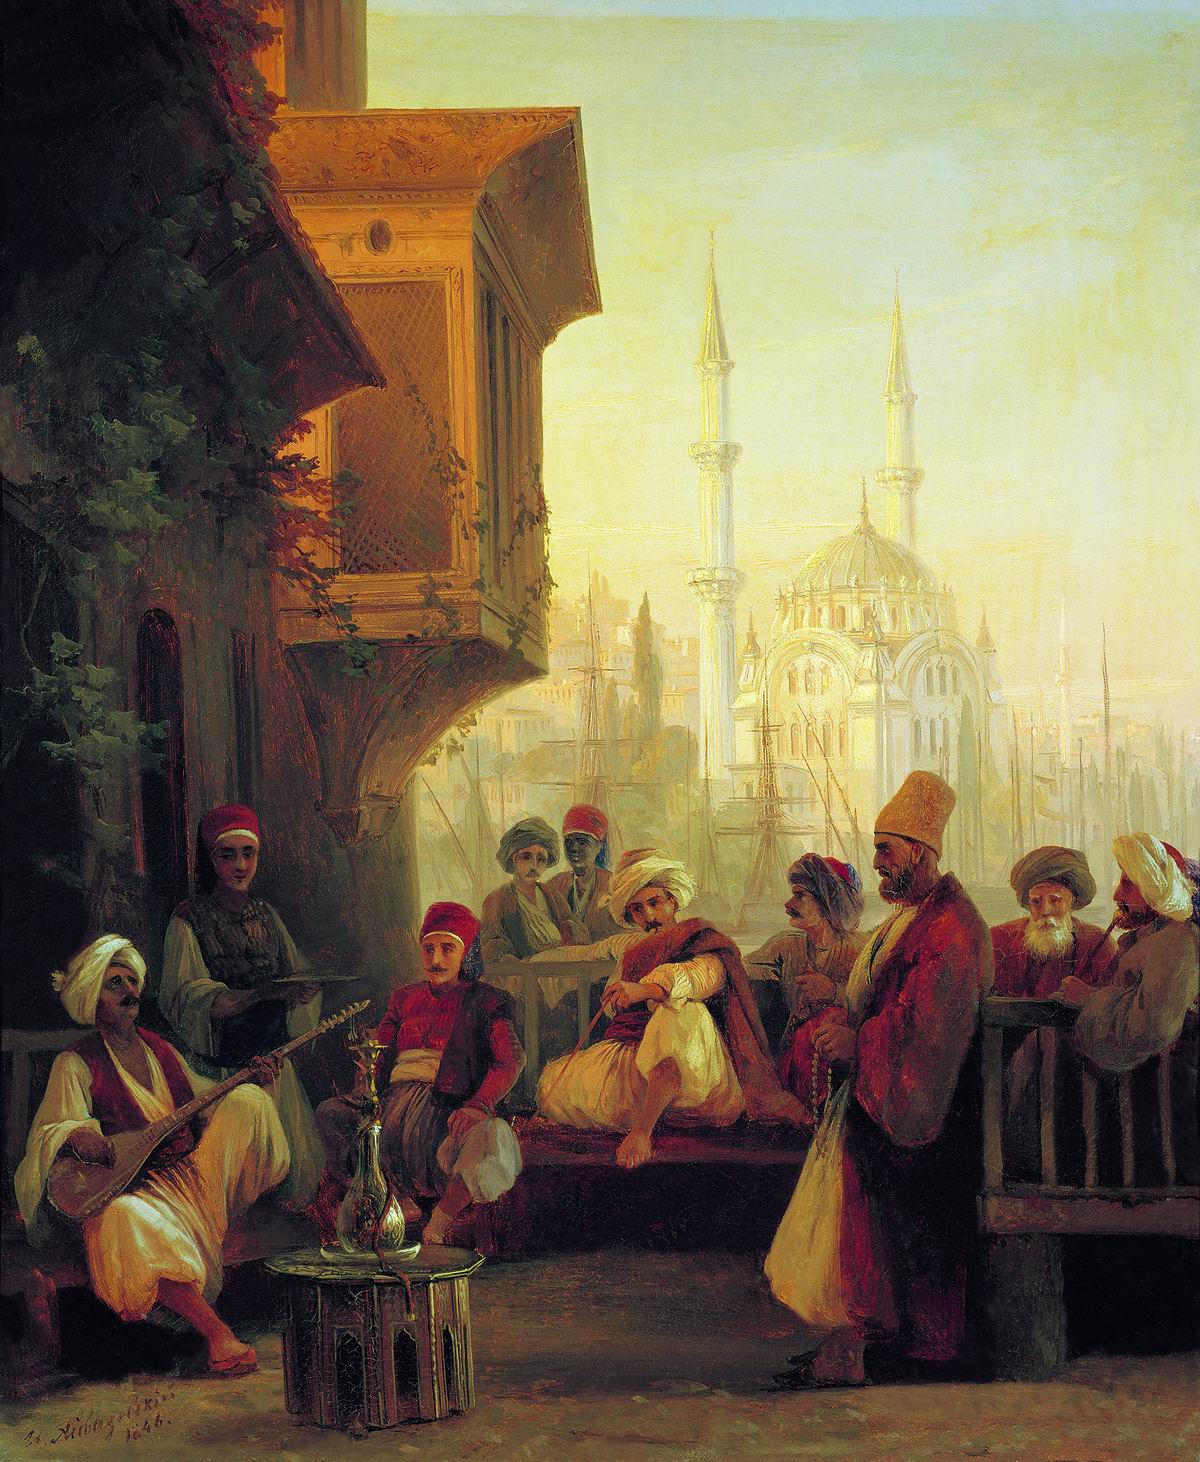 Айвазовский. Восточная сцена. 1846